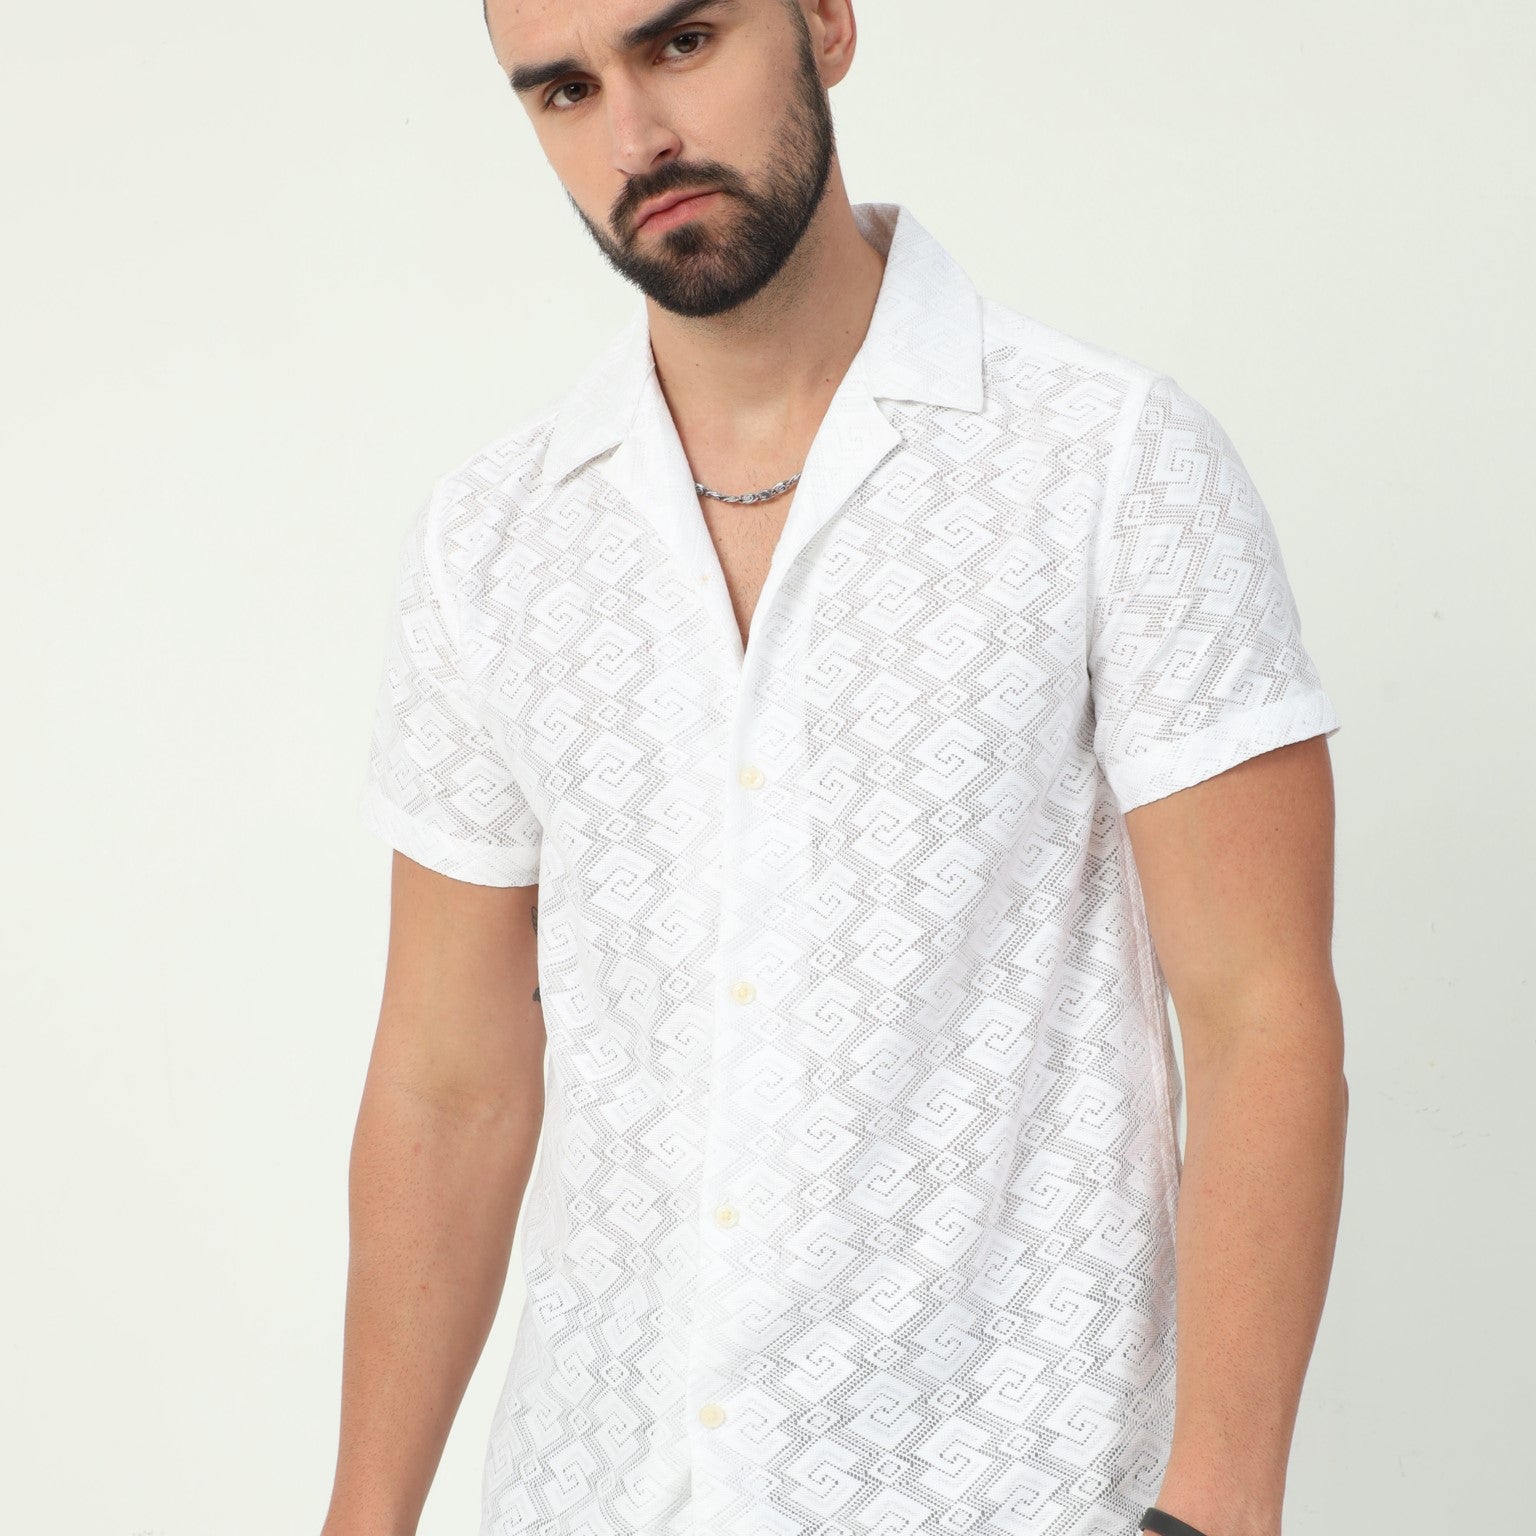 Swirl White Crochet Shirt for Men 